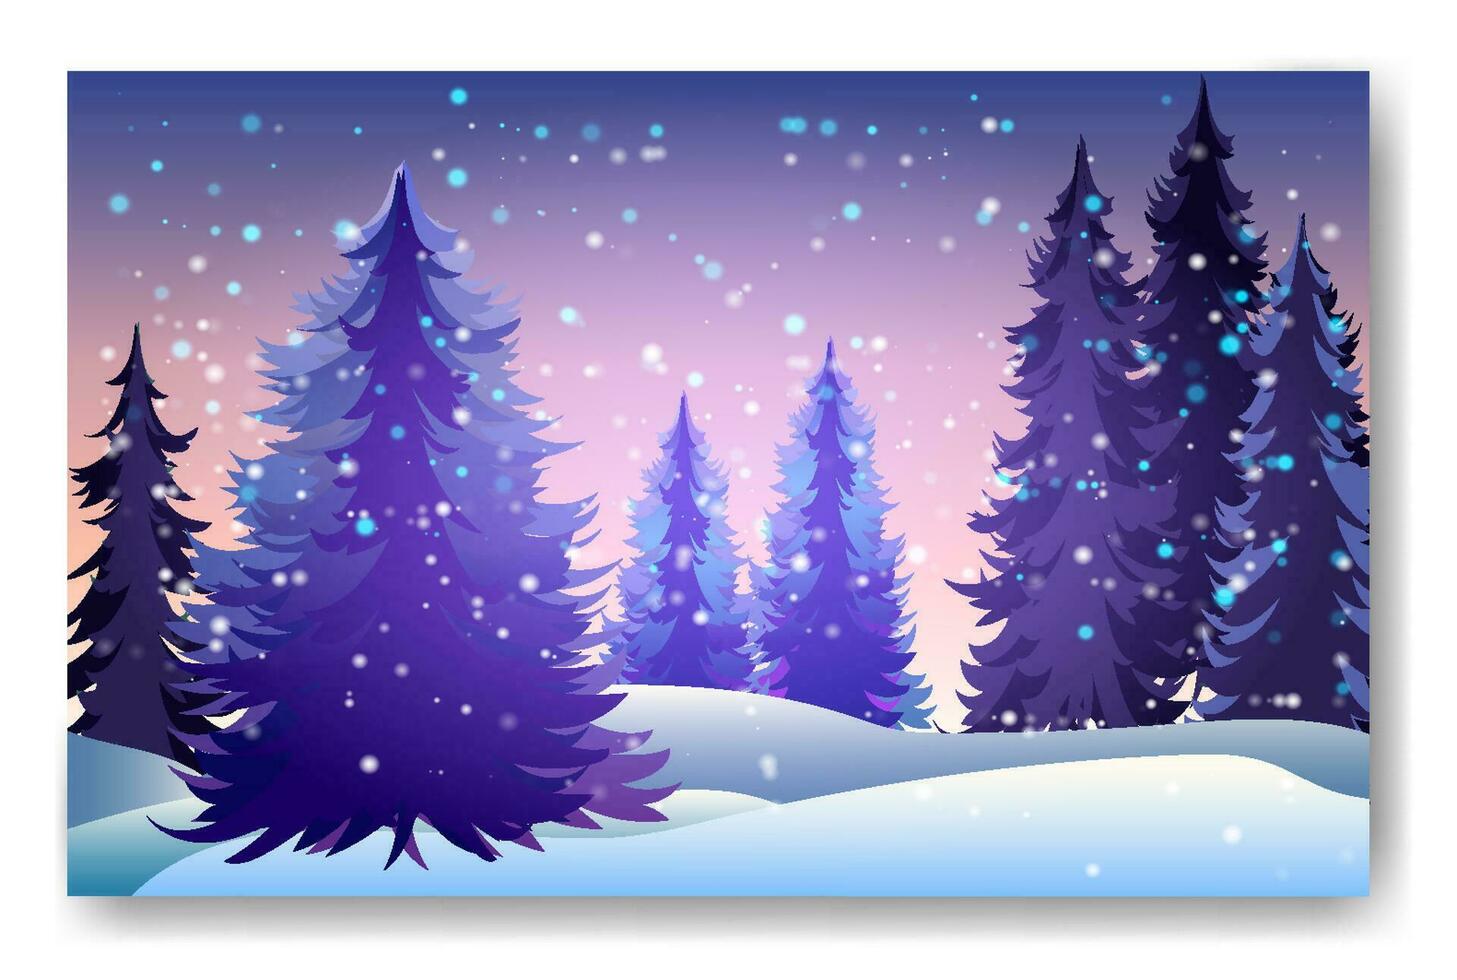 vinter- bakgrund landskap med gran träd och tallar i snö. barr- skog, natt, himmel, stjärnor. jul dekoration. vektor illustration